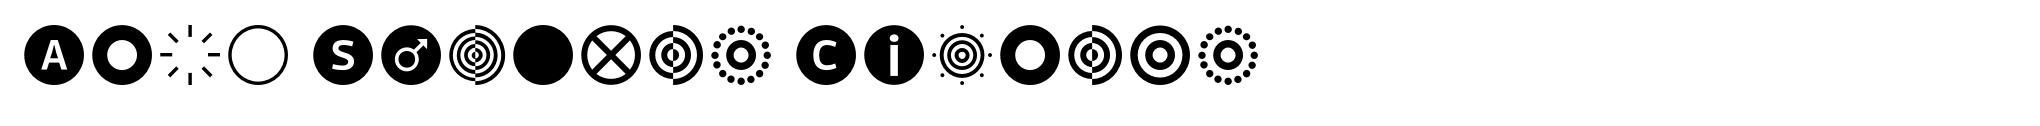 Acta Symbols Circles image